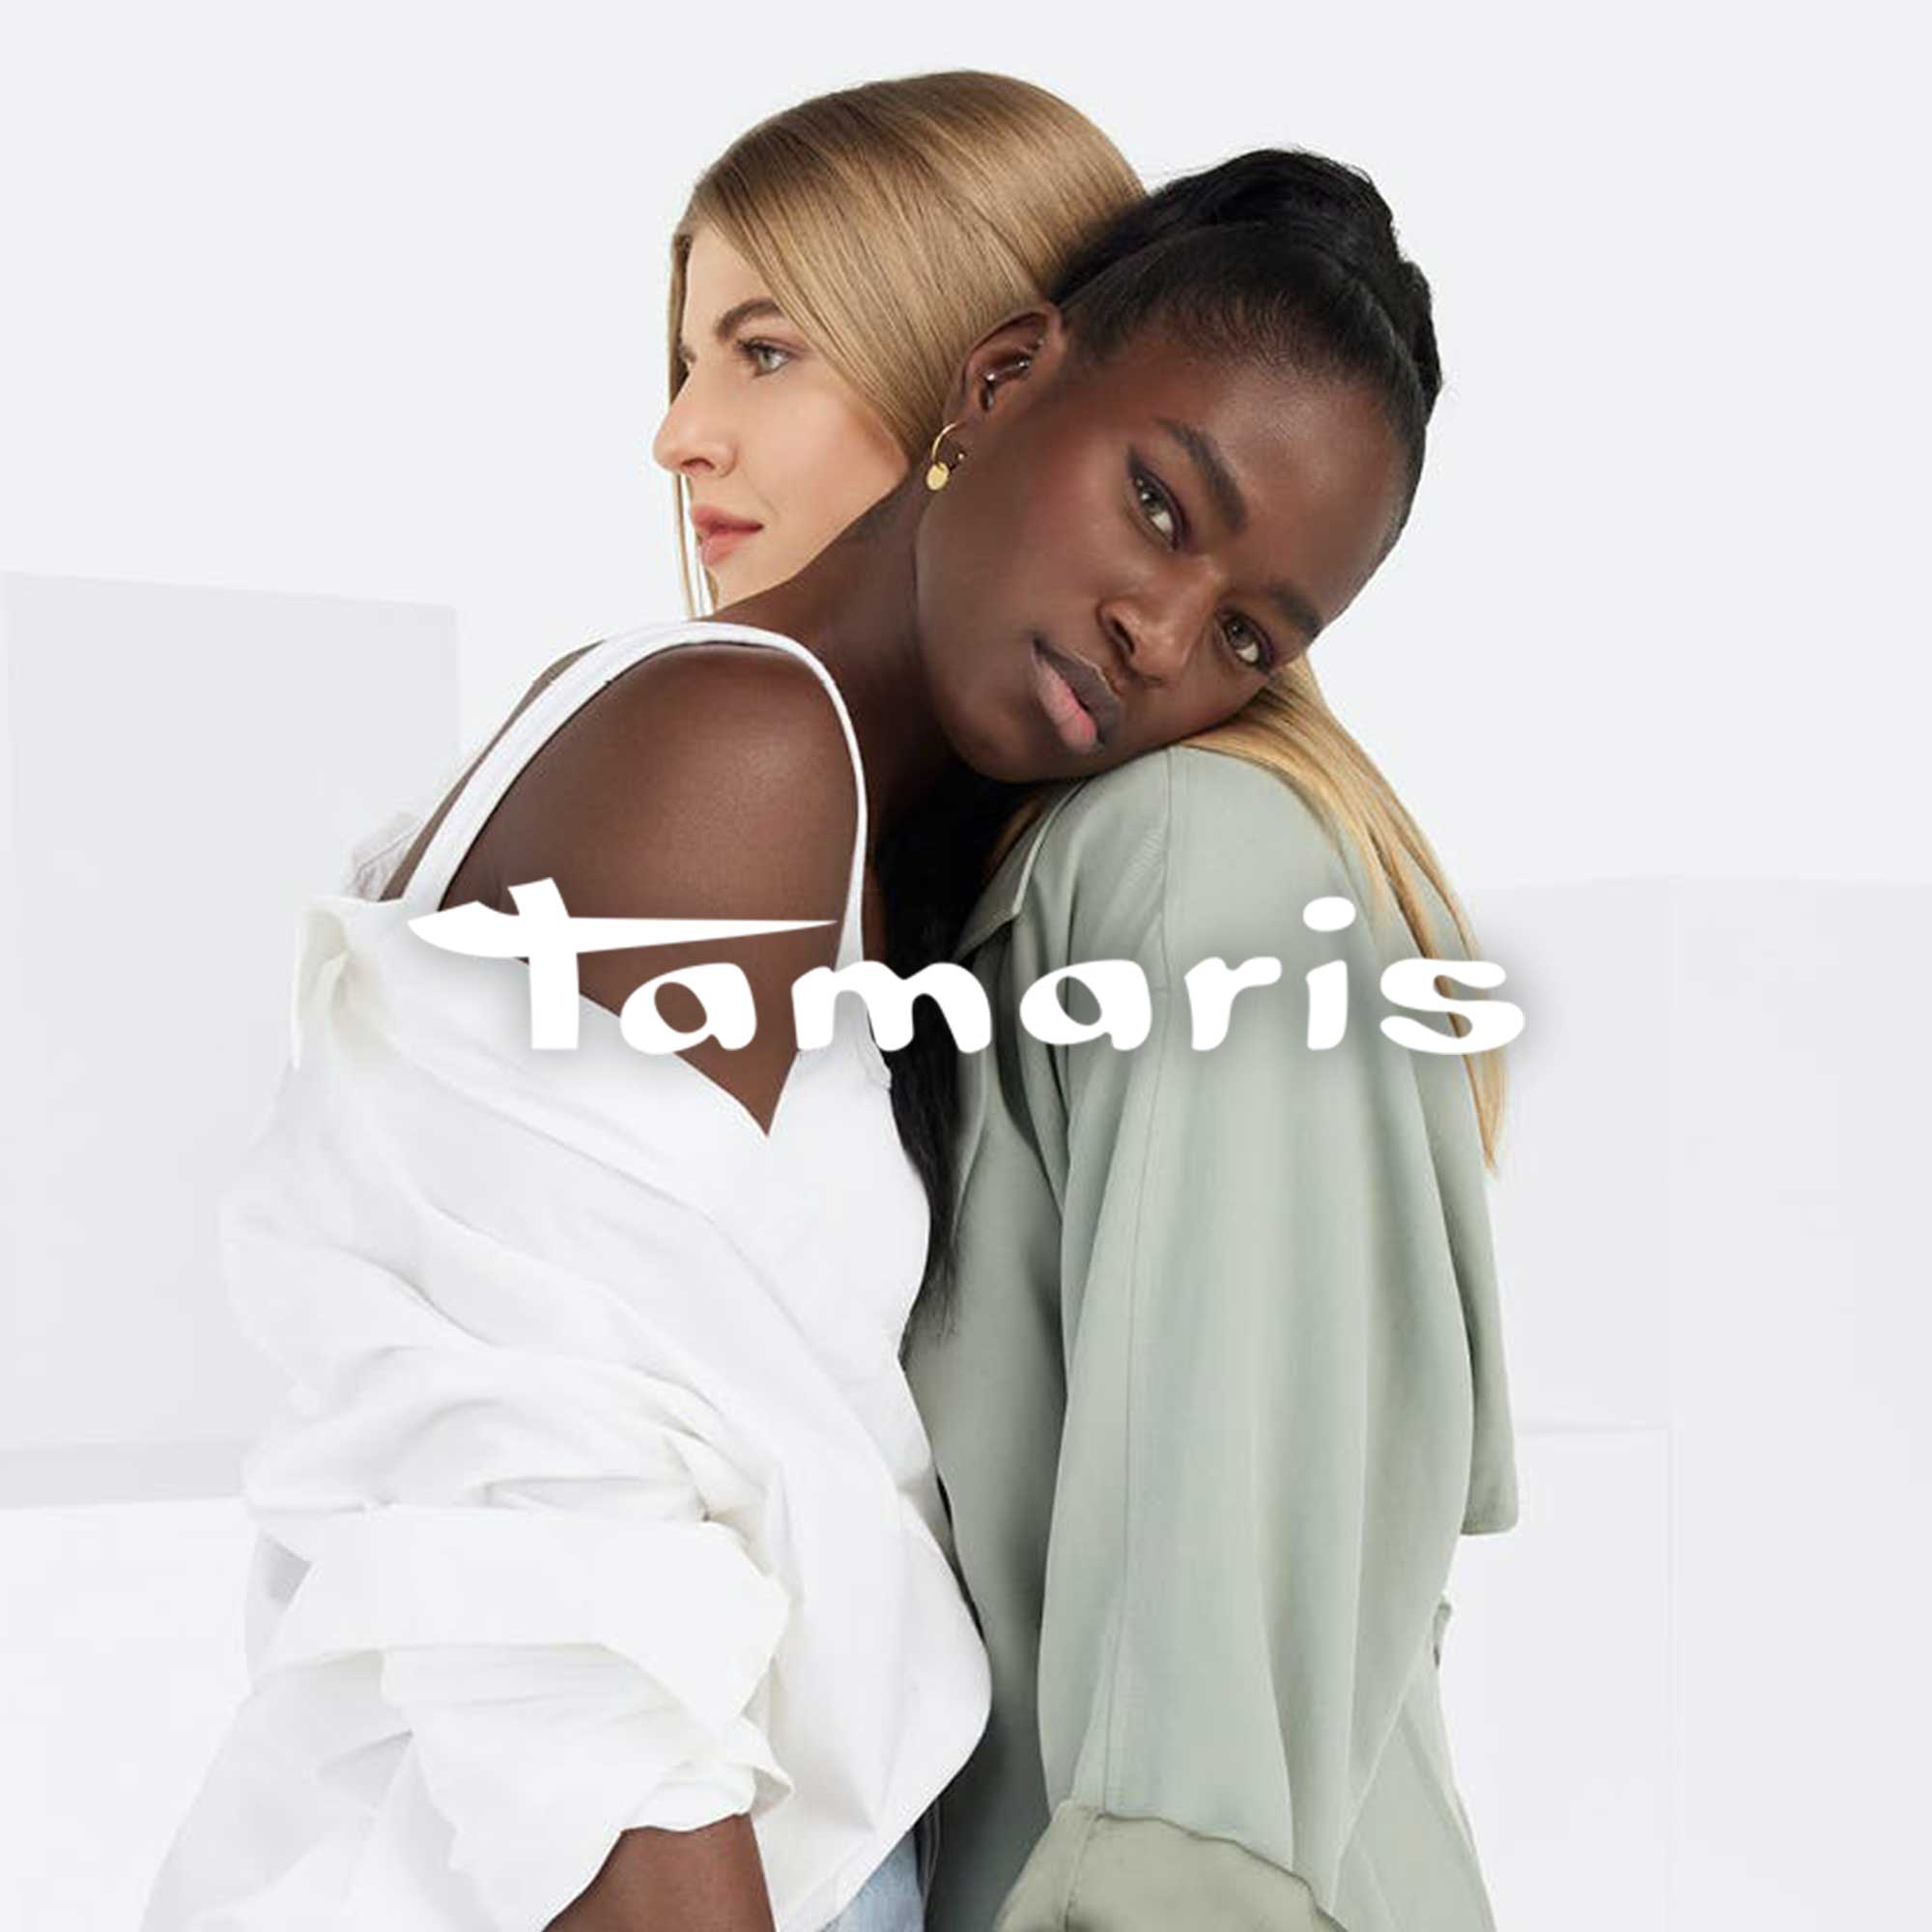 TAMARIS - The